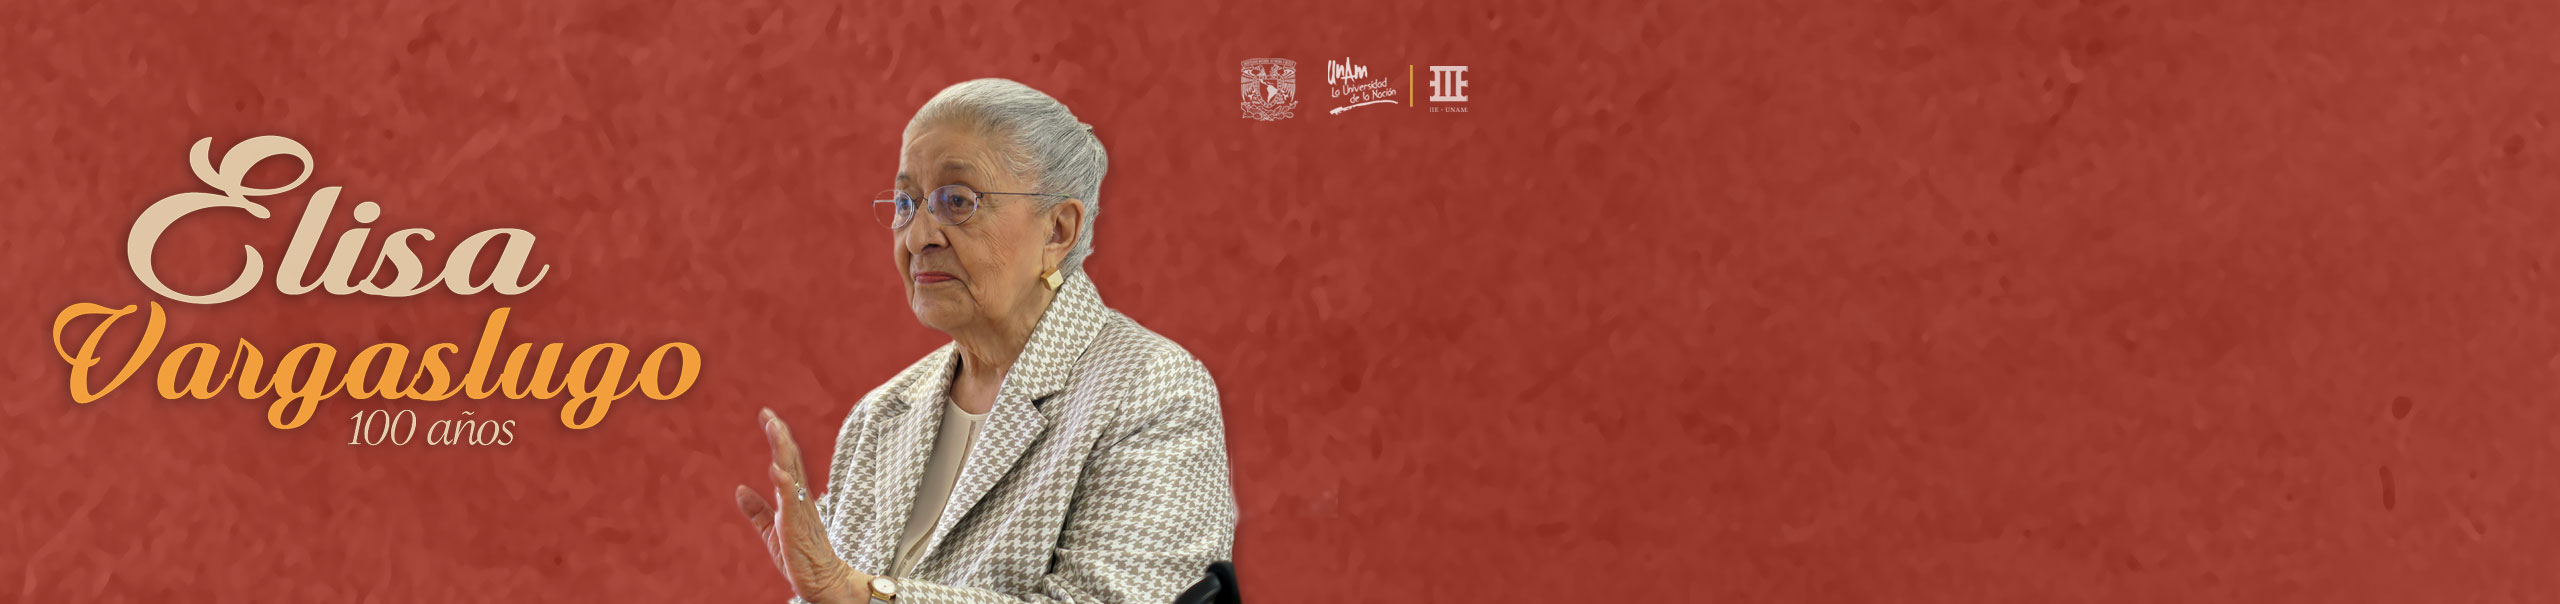 Elisa Vargaslugo, 100 años